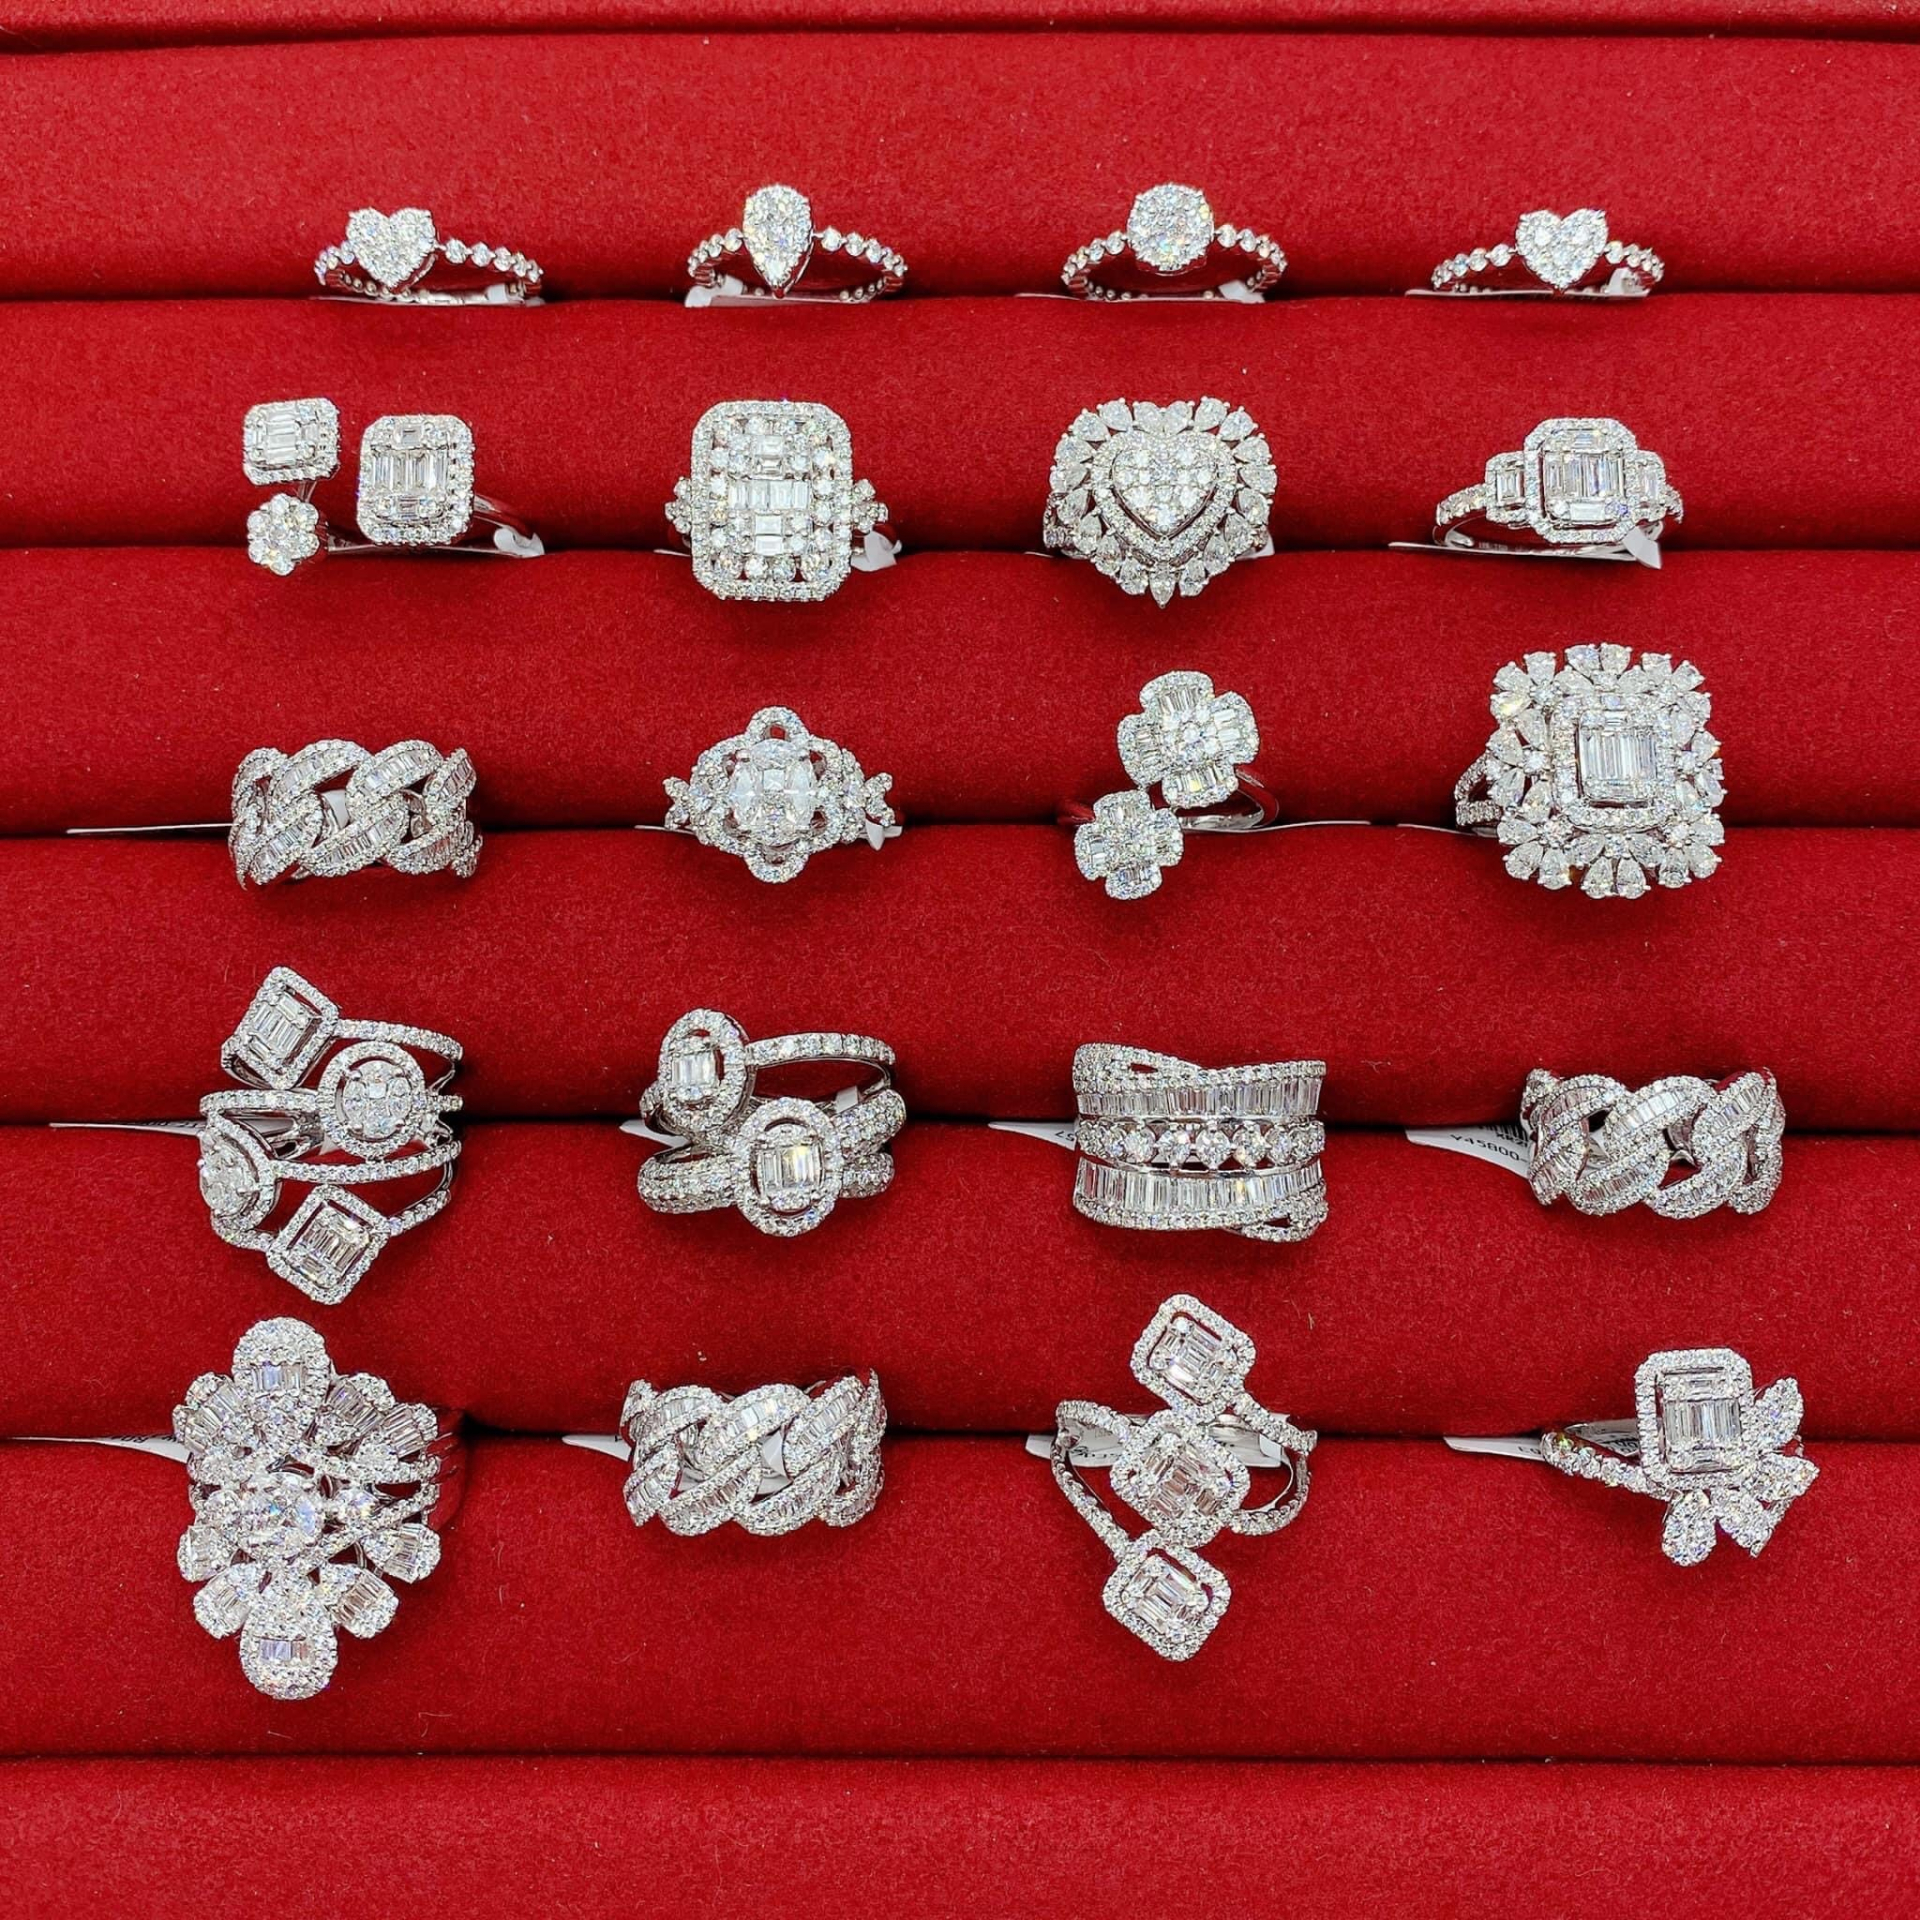 Kim Dung Diamond Jewelry và hành trình xây dựng thương hiệu kim cương uy tín - ảnh 2